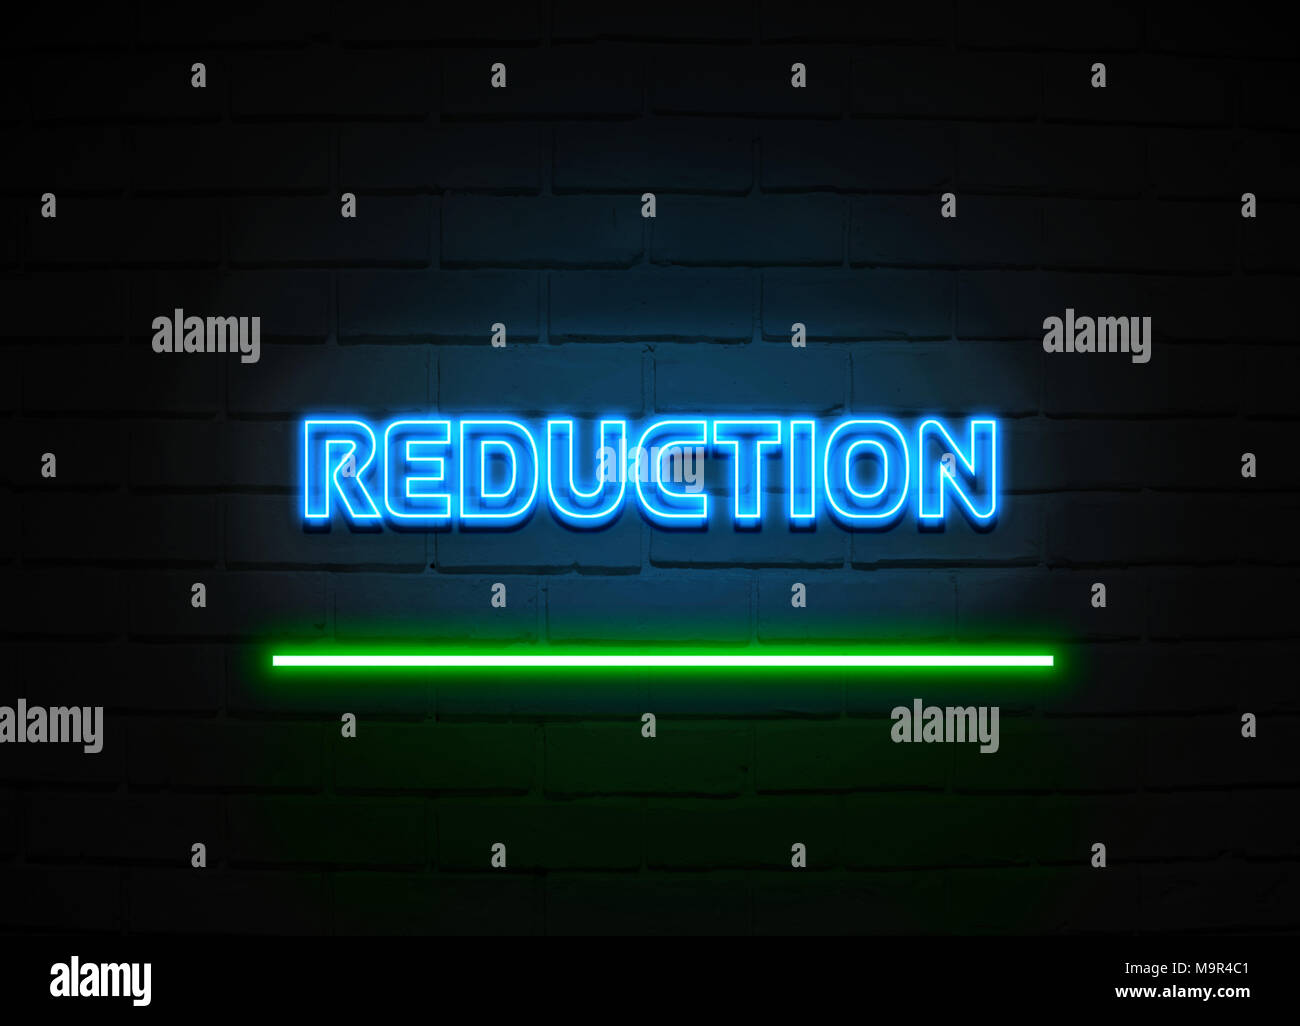 Reduzierung Leuchtreklame - glühende Leuchtreklame auf brickwall Wand - 3D-Royalty Free Stock Illustration dargestellt. Stockfoto